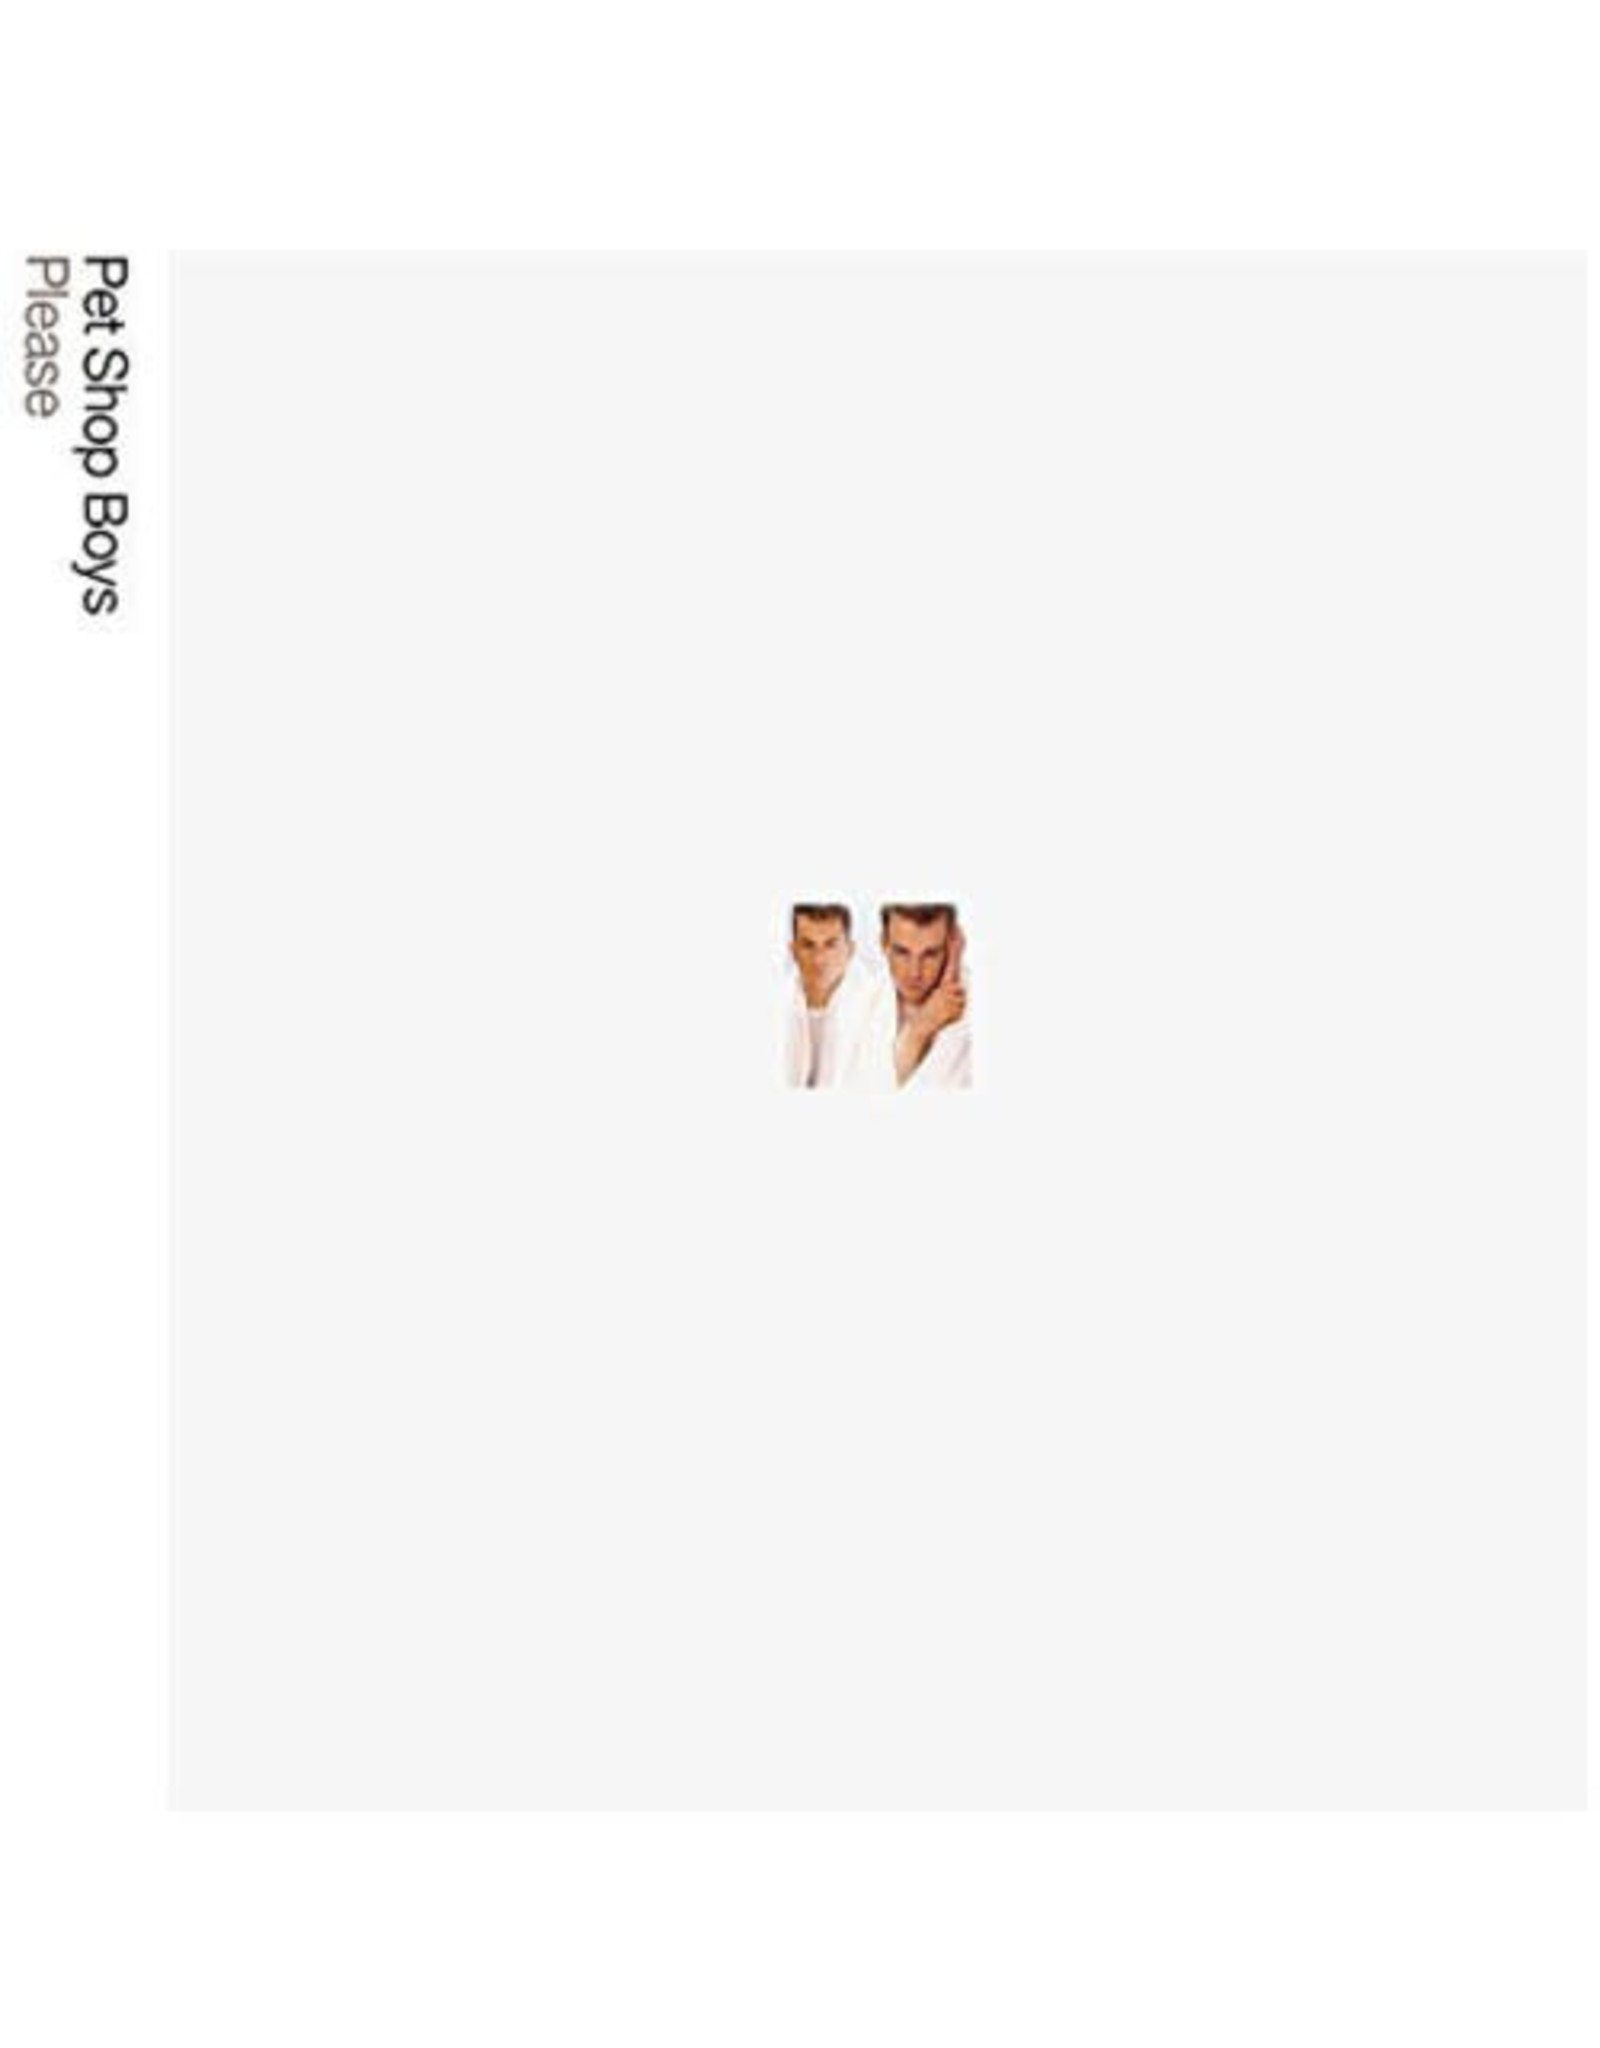 New Vinyl Pet Shop Boys - Please (2018 Remastered Version) LP